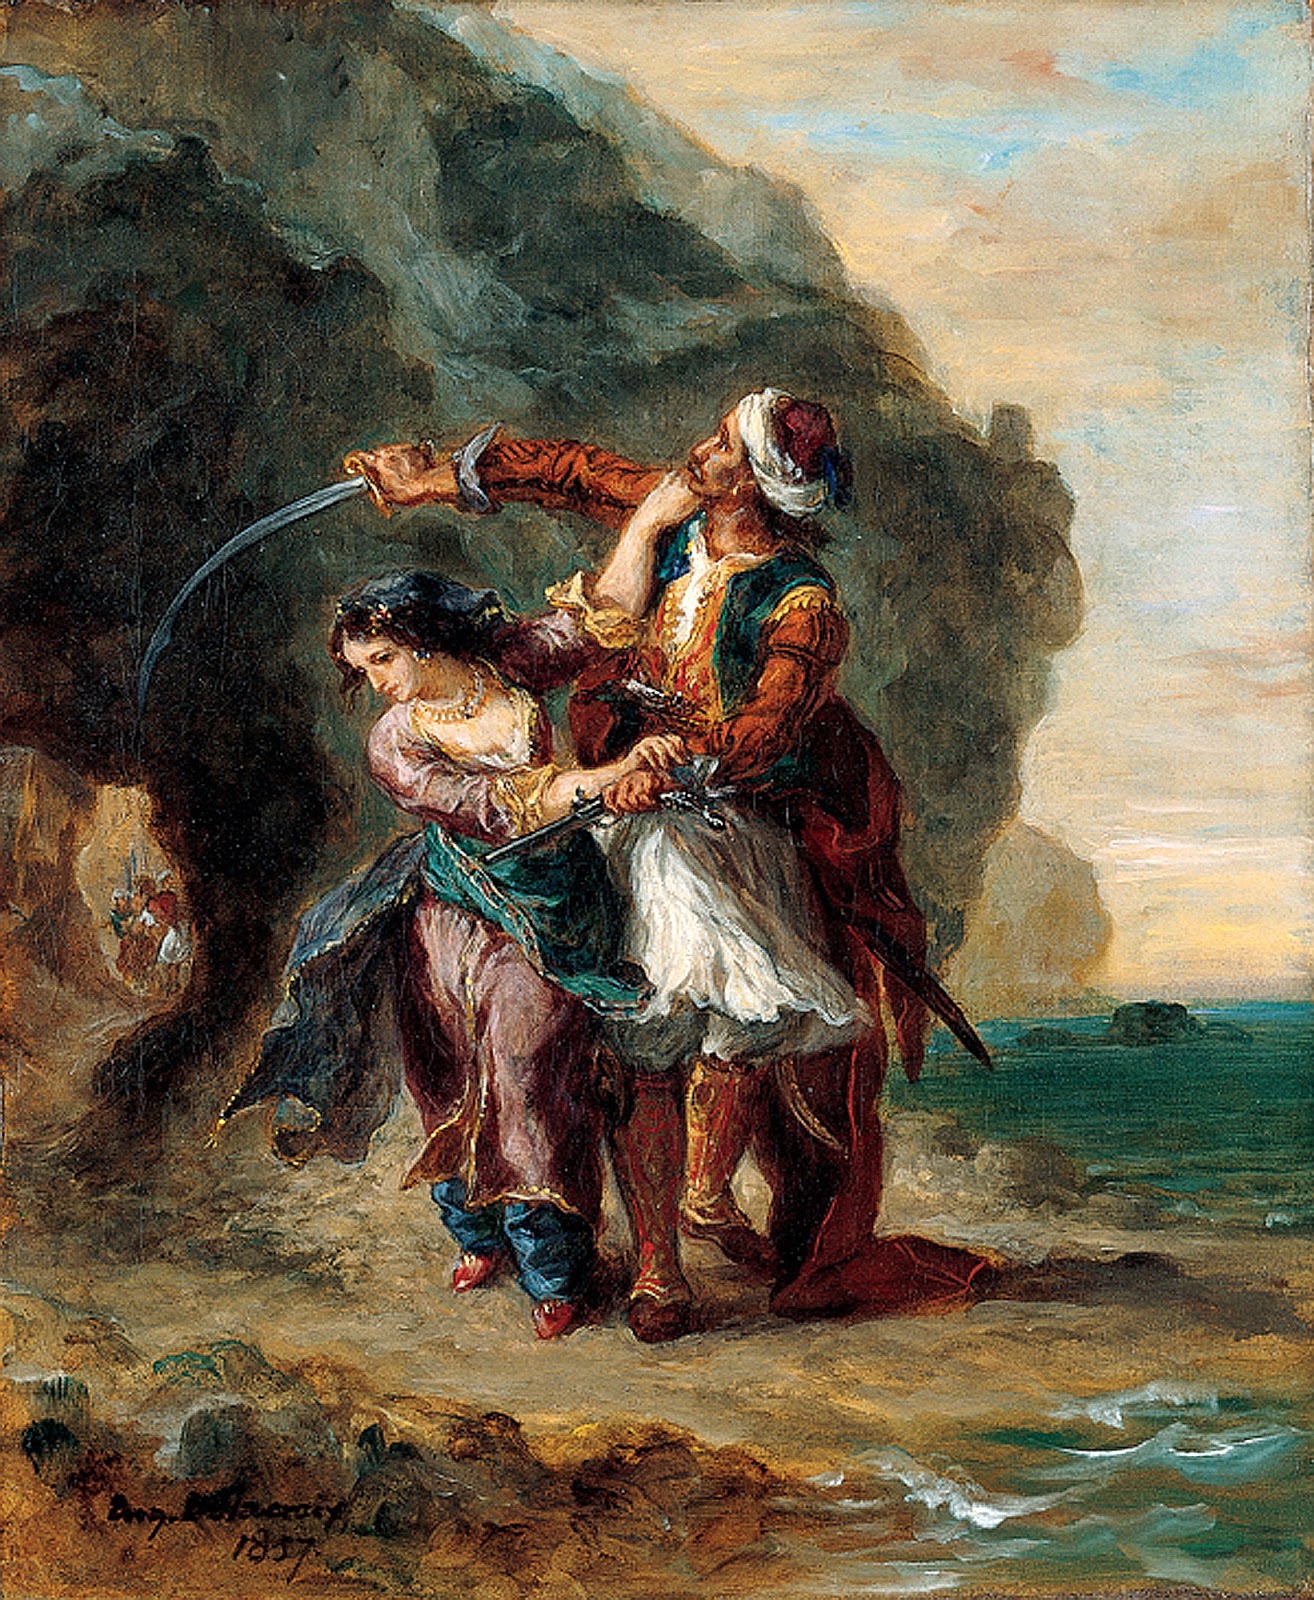 Eugene+Delacroix-1798-1863 (202).jpg